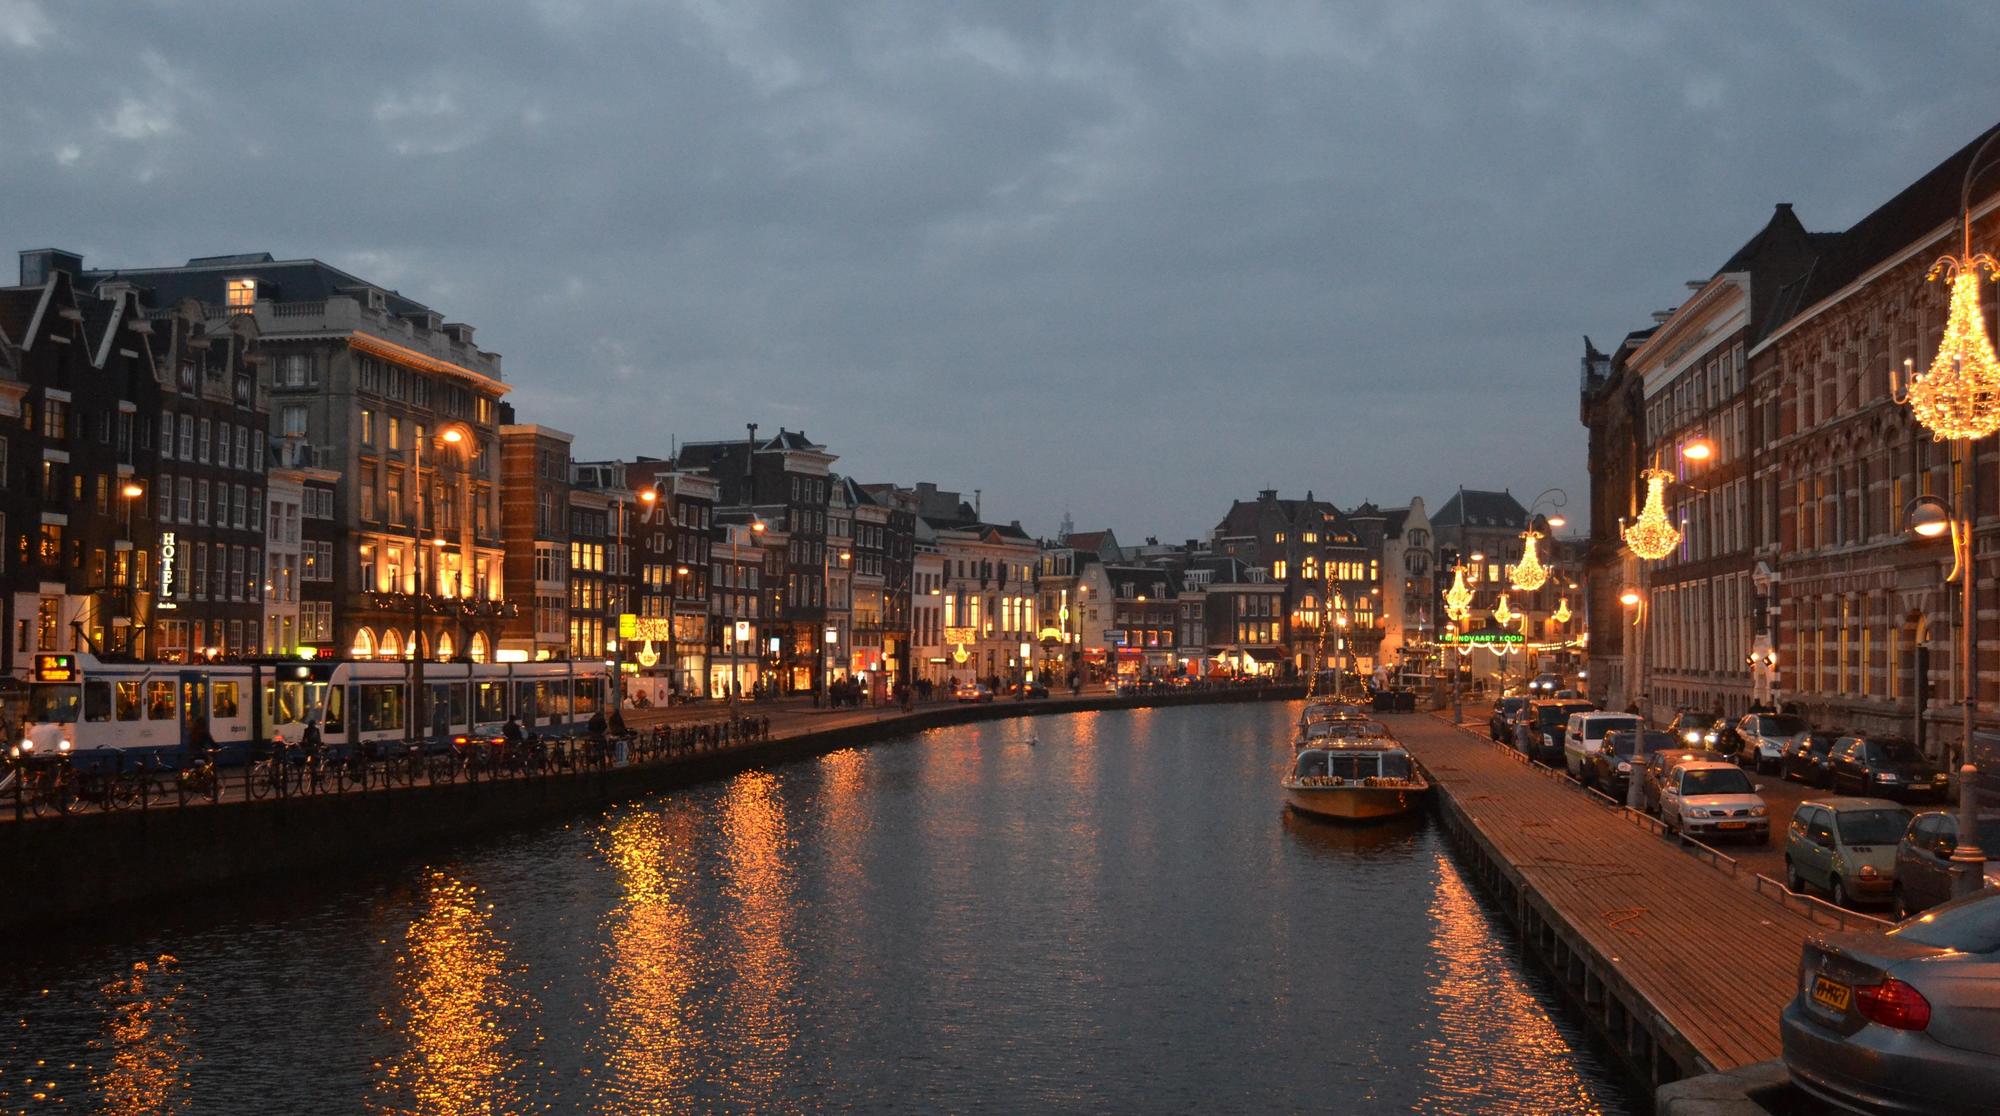 Typische Häuserzeilen am Grachtengürtel von Amsterdam.